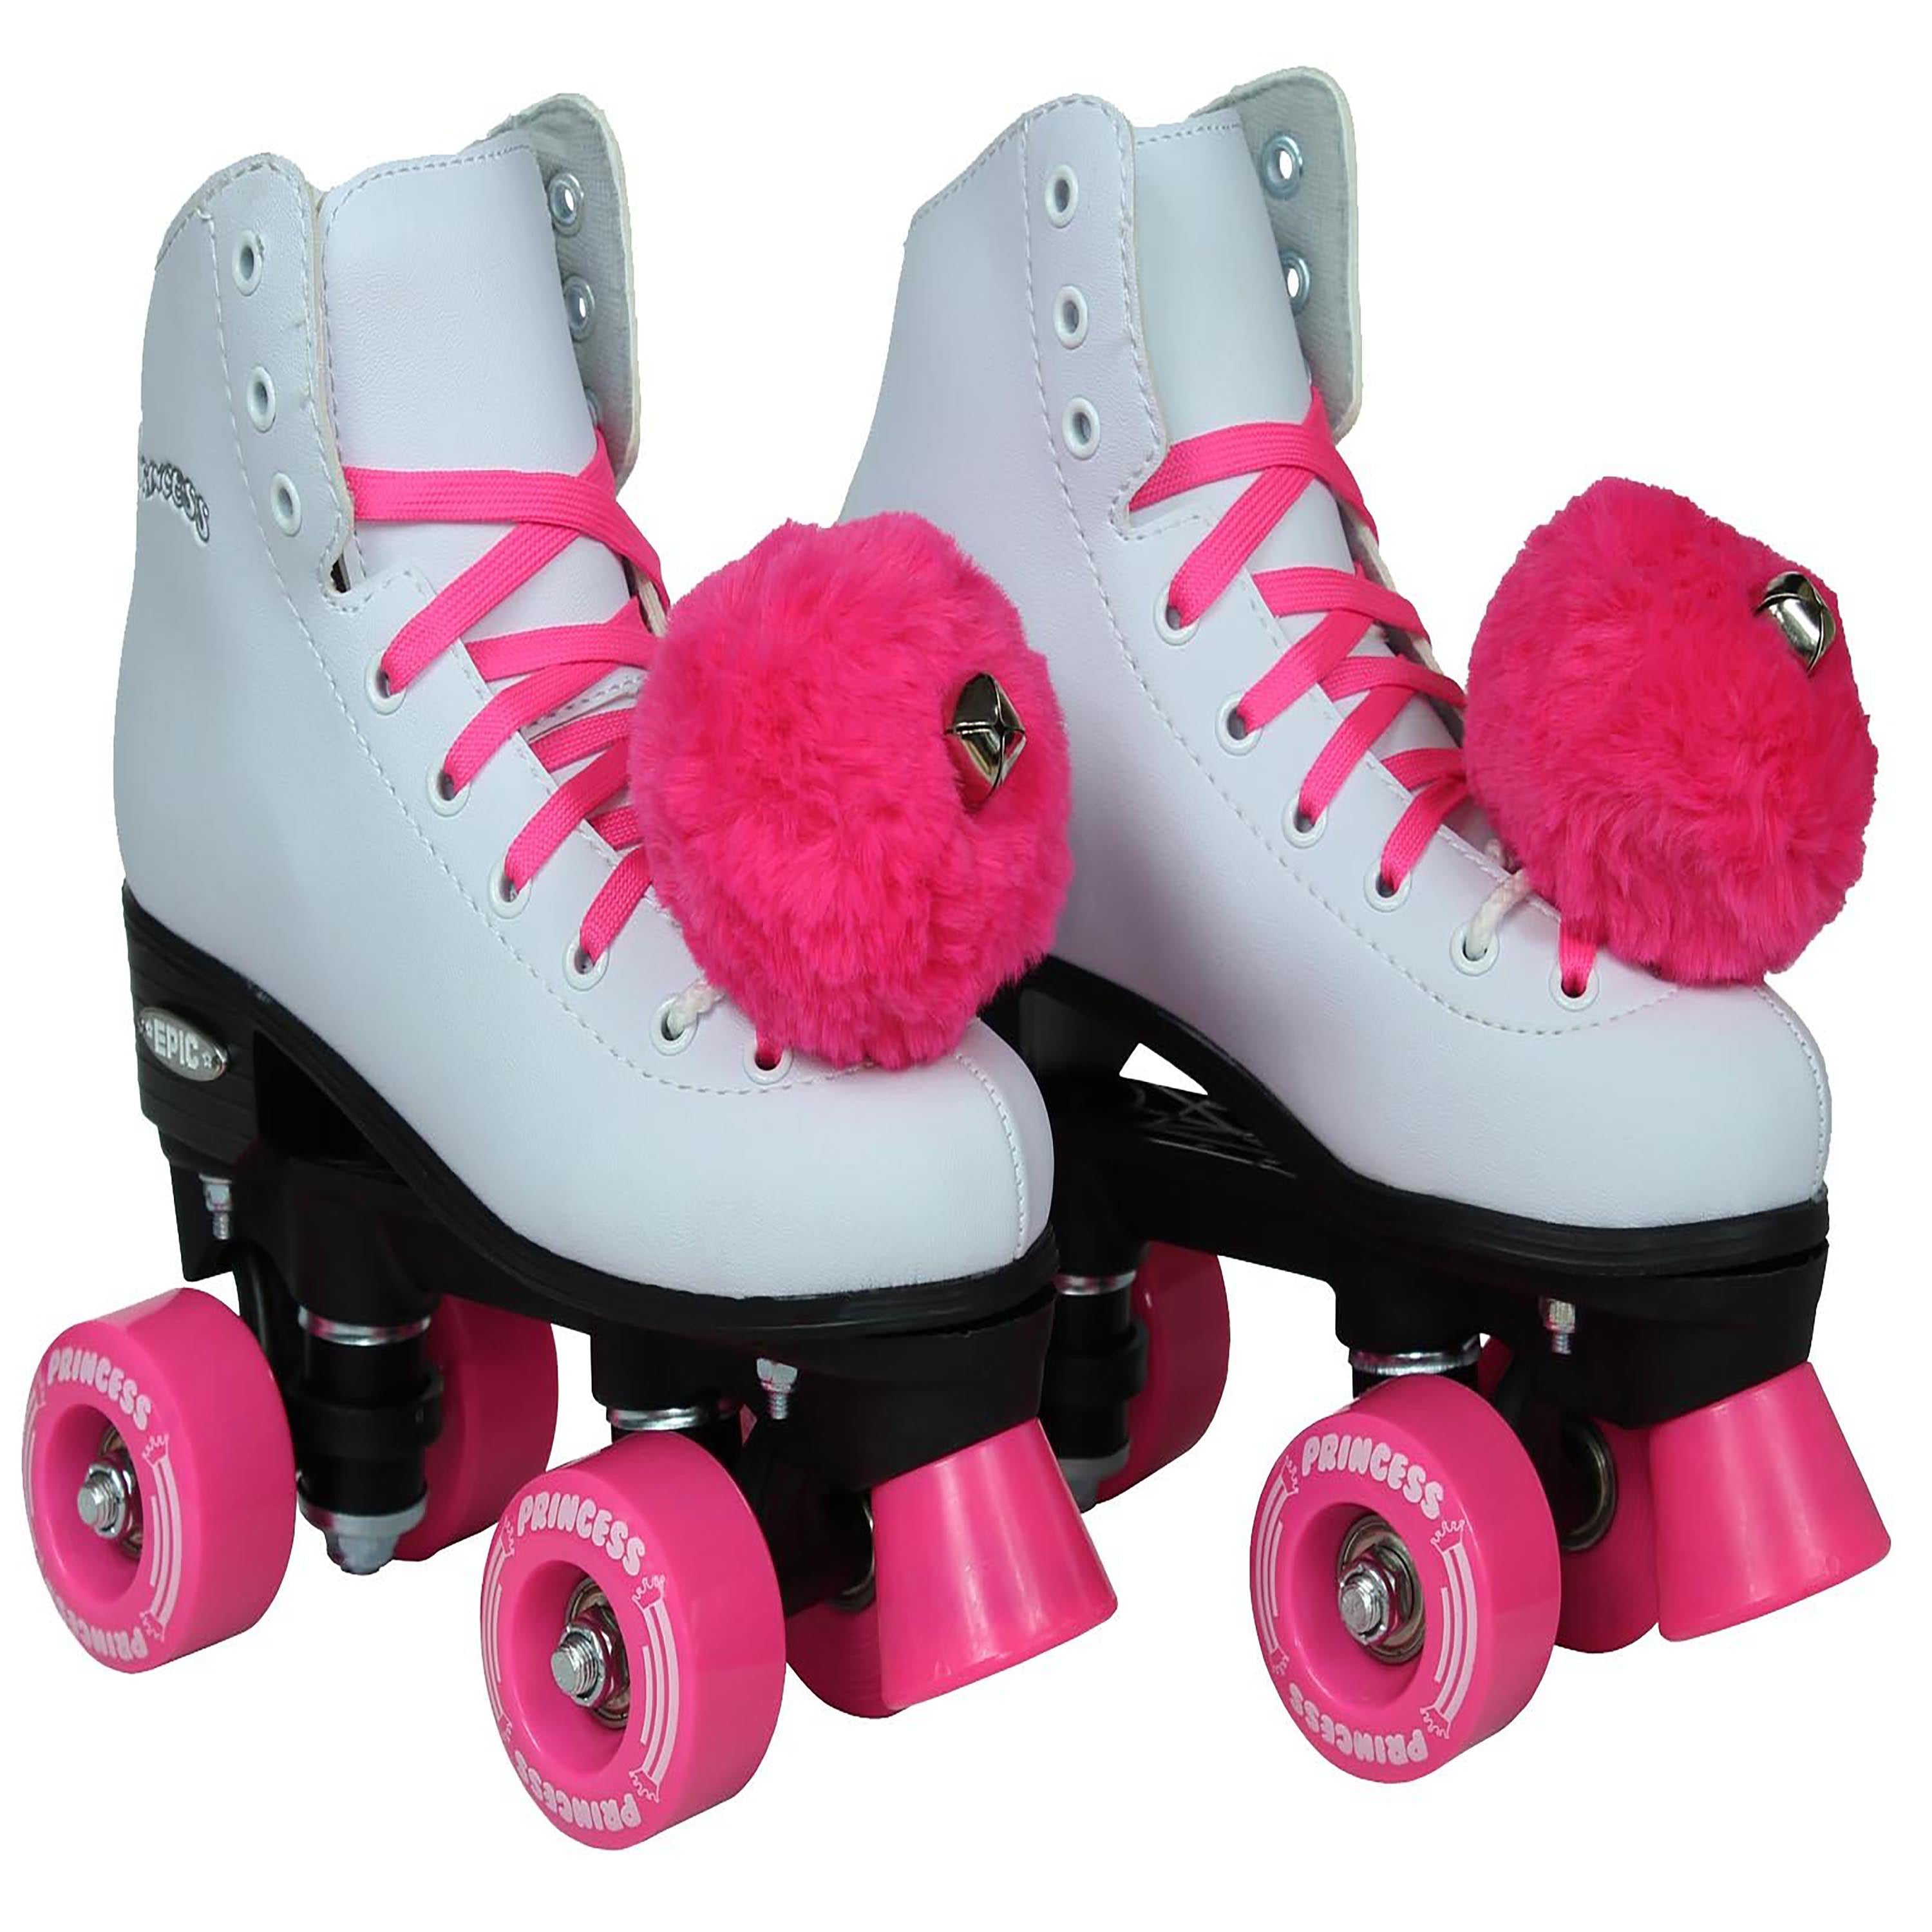 Epic Pink Princess Quad Roller Skates – LowPriceSkates.com